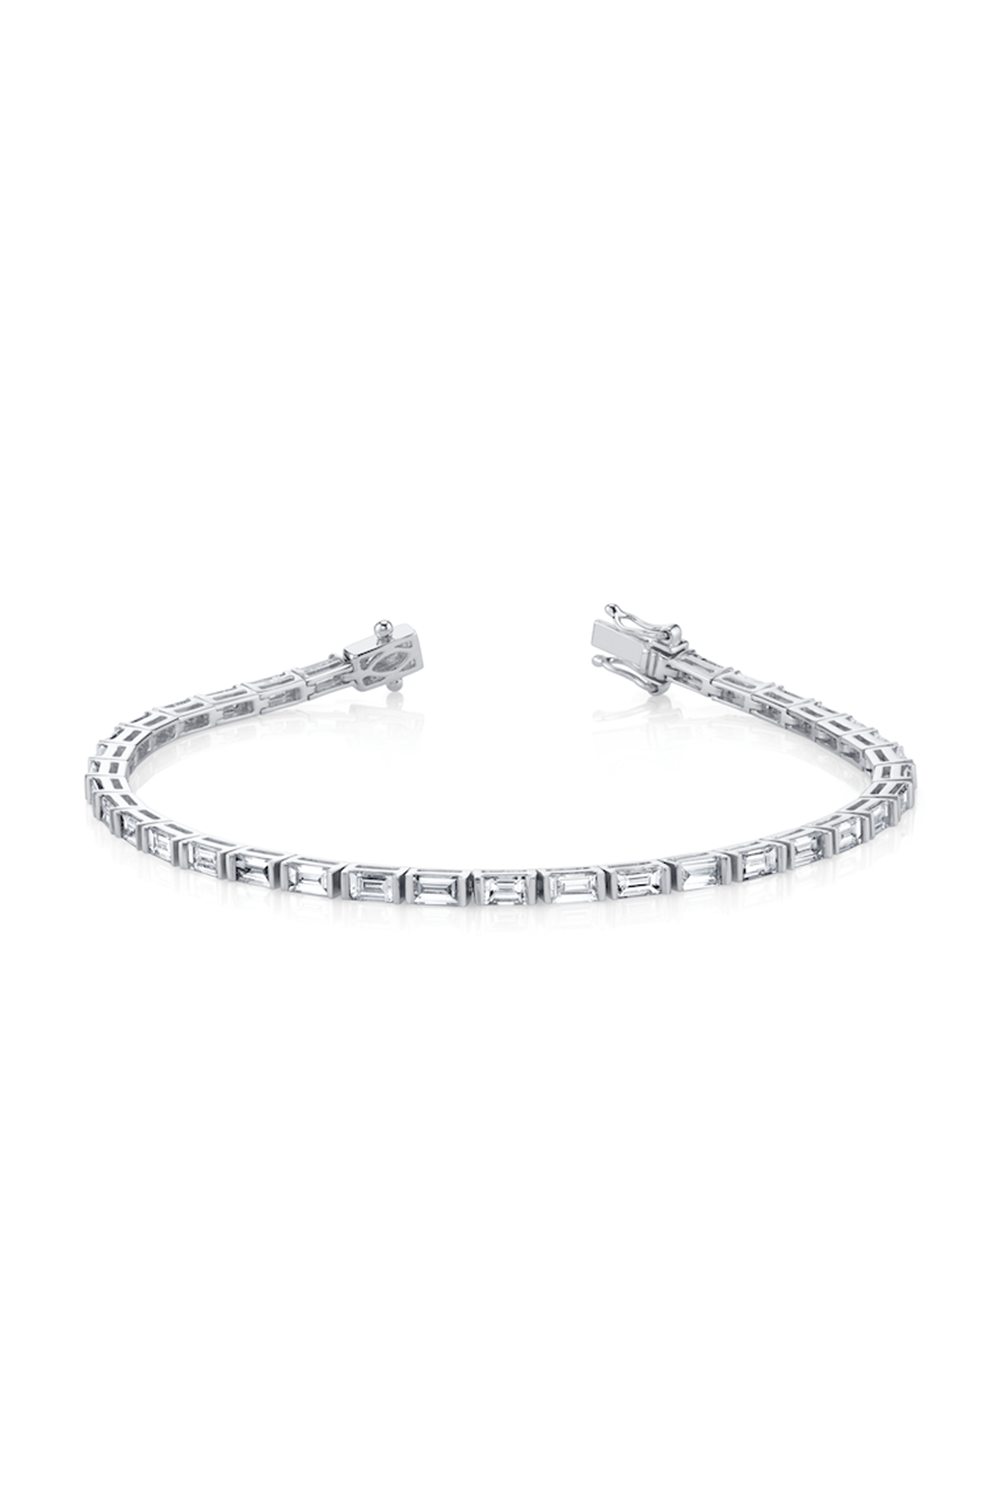 Anita Ko Jewelry \ Bracelets